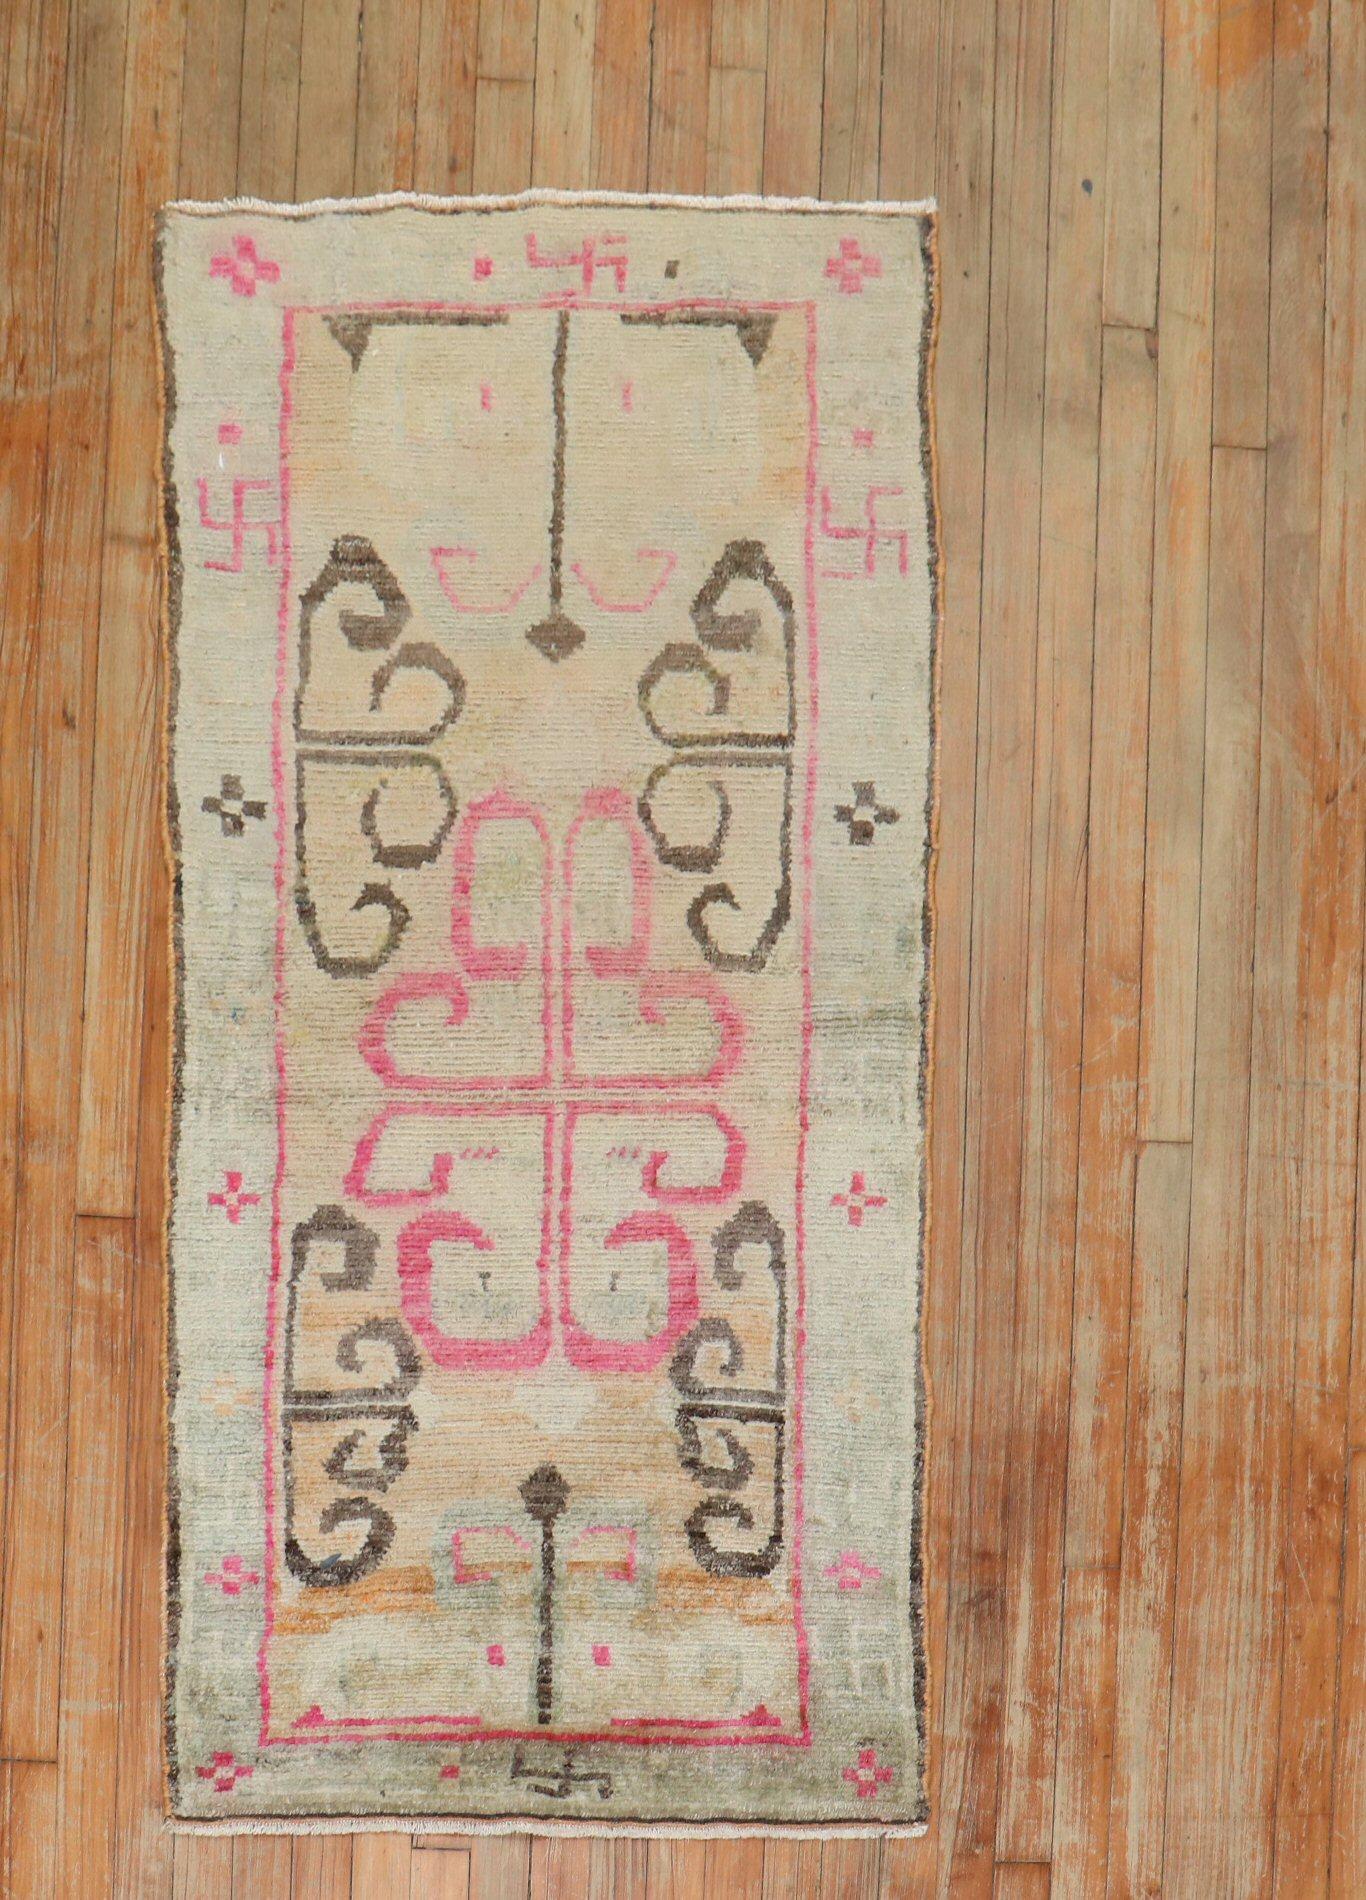 
2. Quartal des 20. Jahrhunderts Tibetischer Teppich in femininen Farben. Die Umrandung besteht aus weichen braunen, rosafarbenen und weißen Hakenkreuzen (卐 oder 卍) t religiösen und kulturellen 